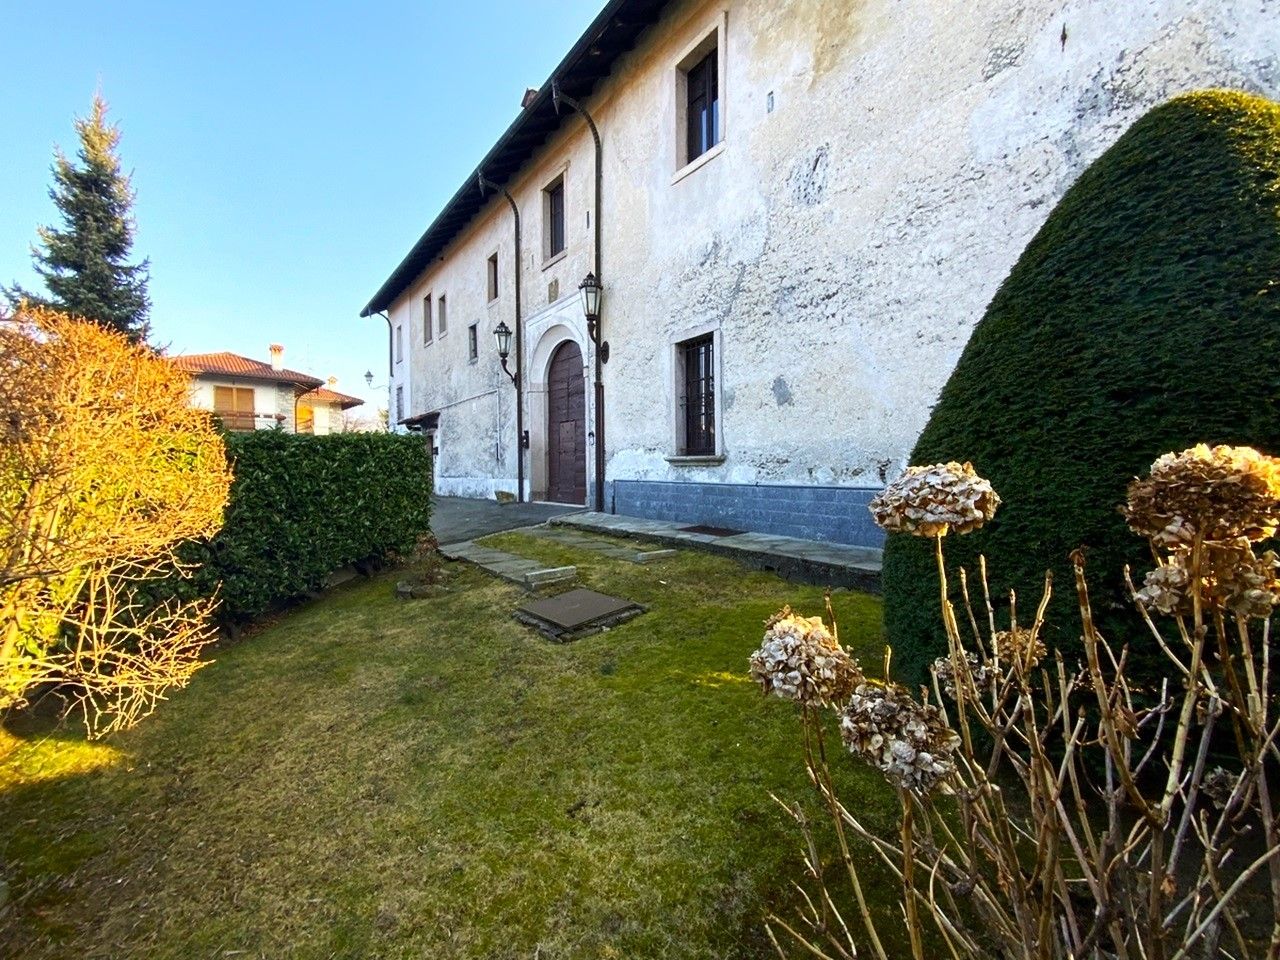 Photos Part of the Historic "Il Castello di Vezzo" Estate by the Visconti Family